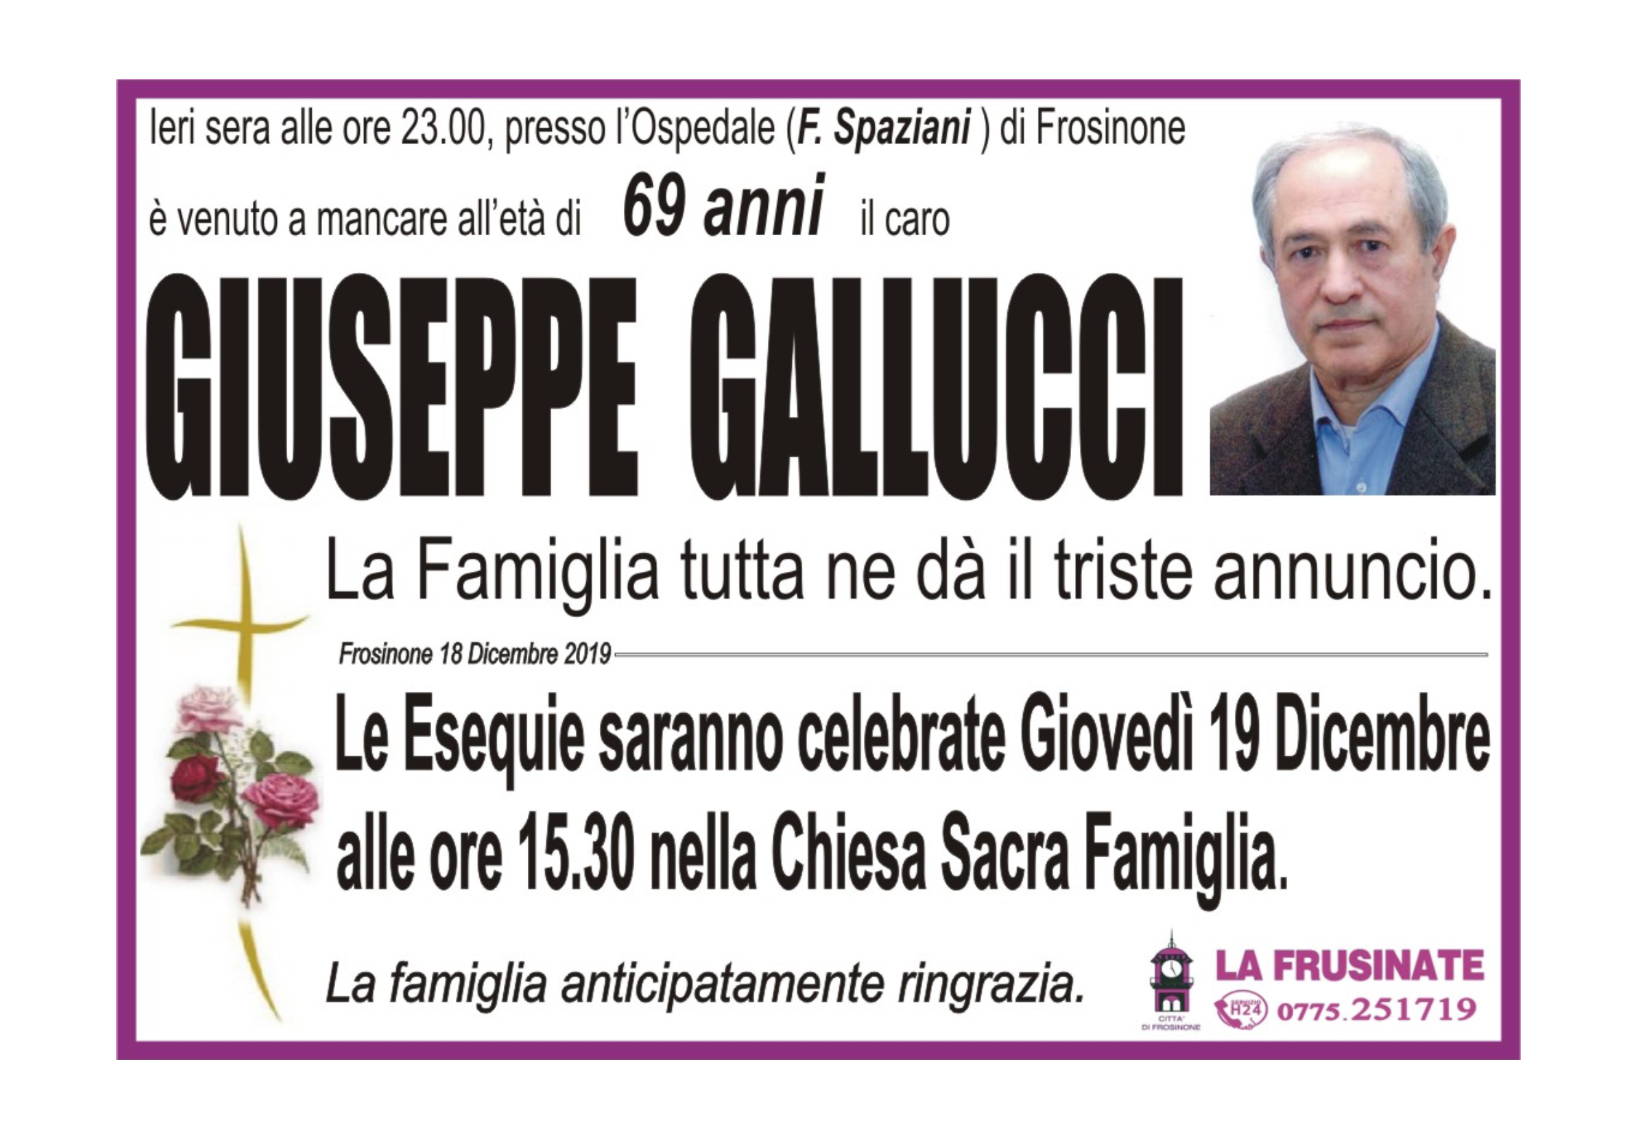 Giuseppe Gallucci